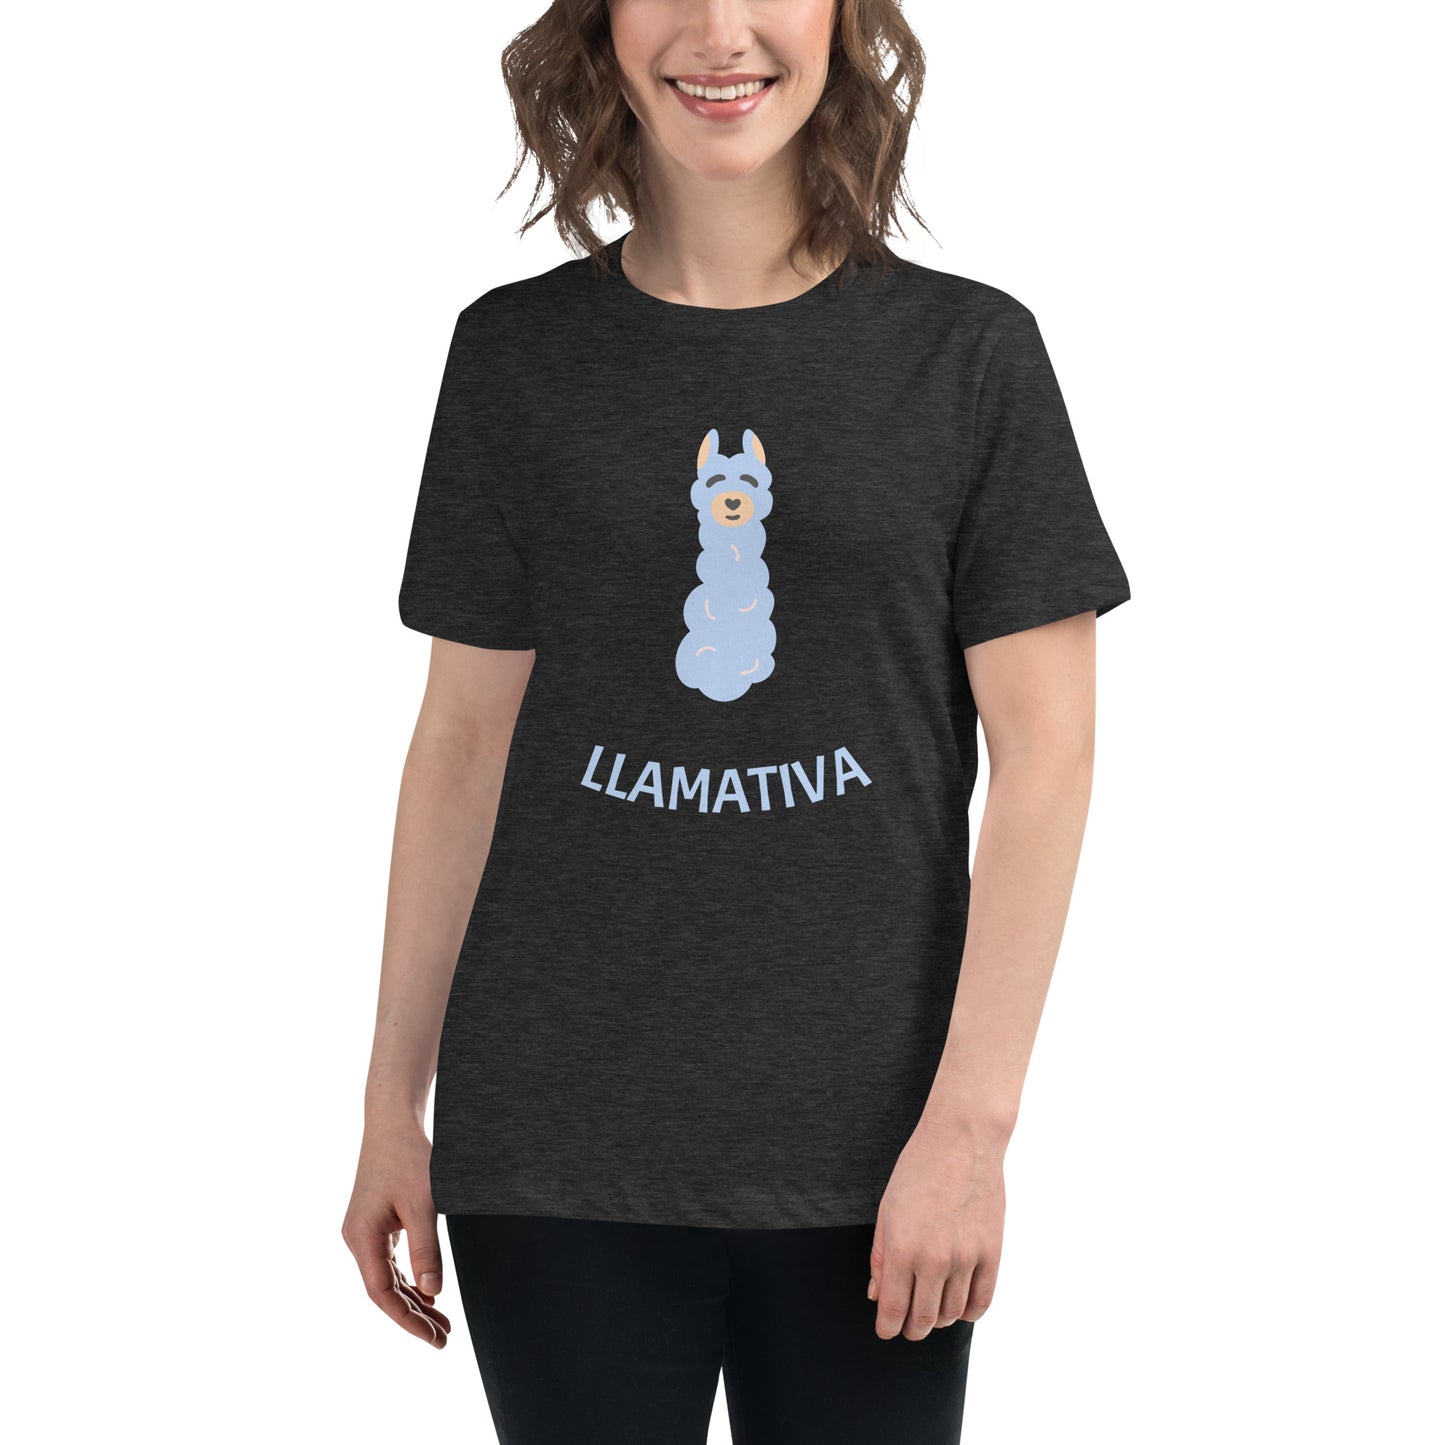 Llamativa Women's Relaxed T-Shirt